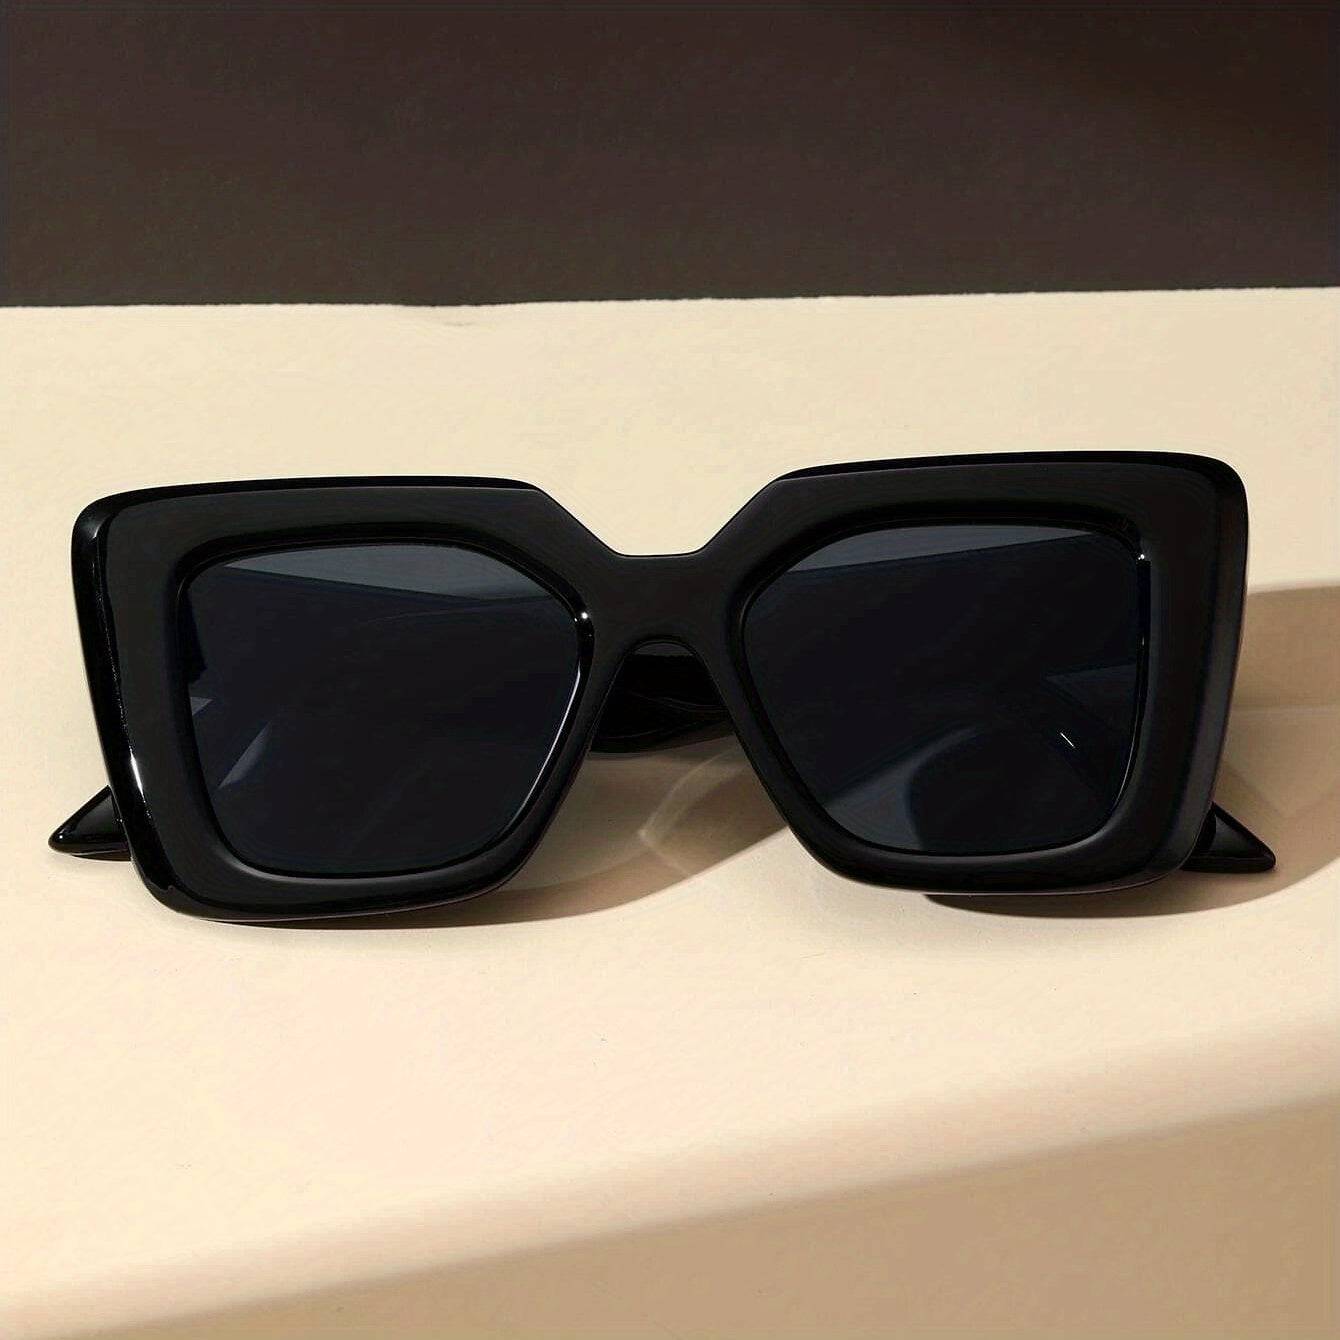 Sonnenbrille: Rechteckiger Rahmen, klassische Katzenaugen, lässig für Wanderungen und Angeln.